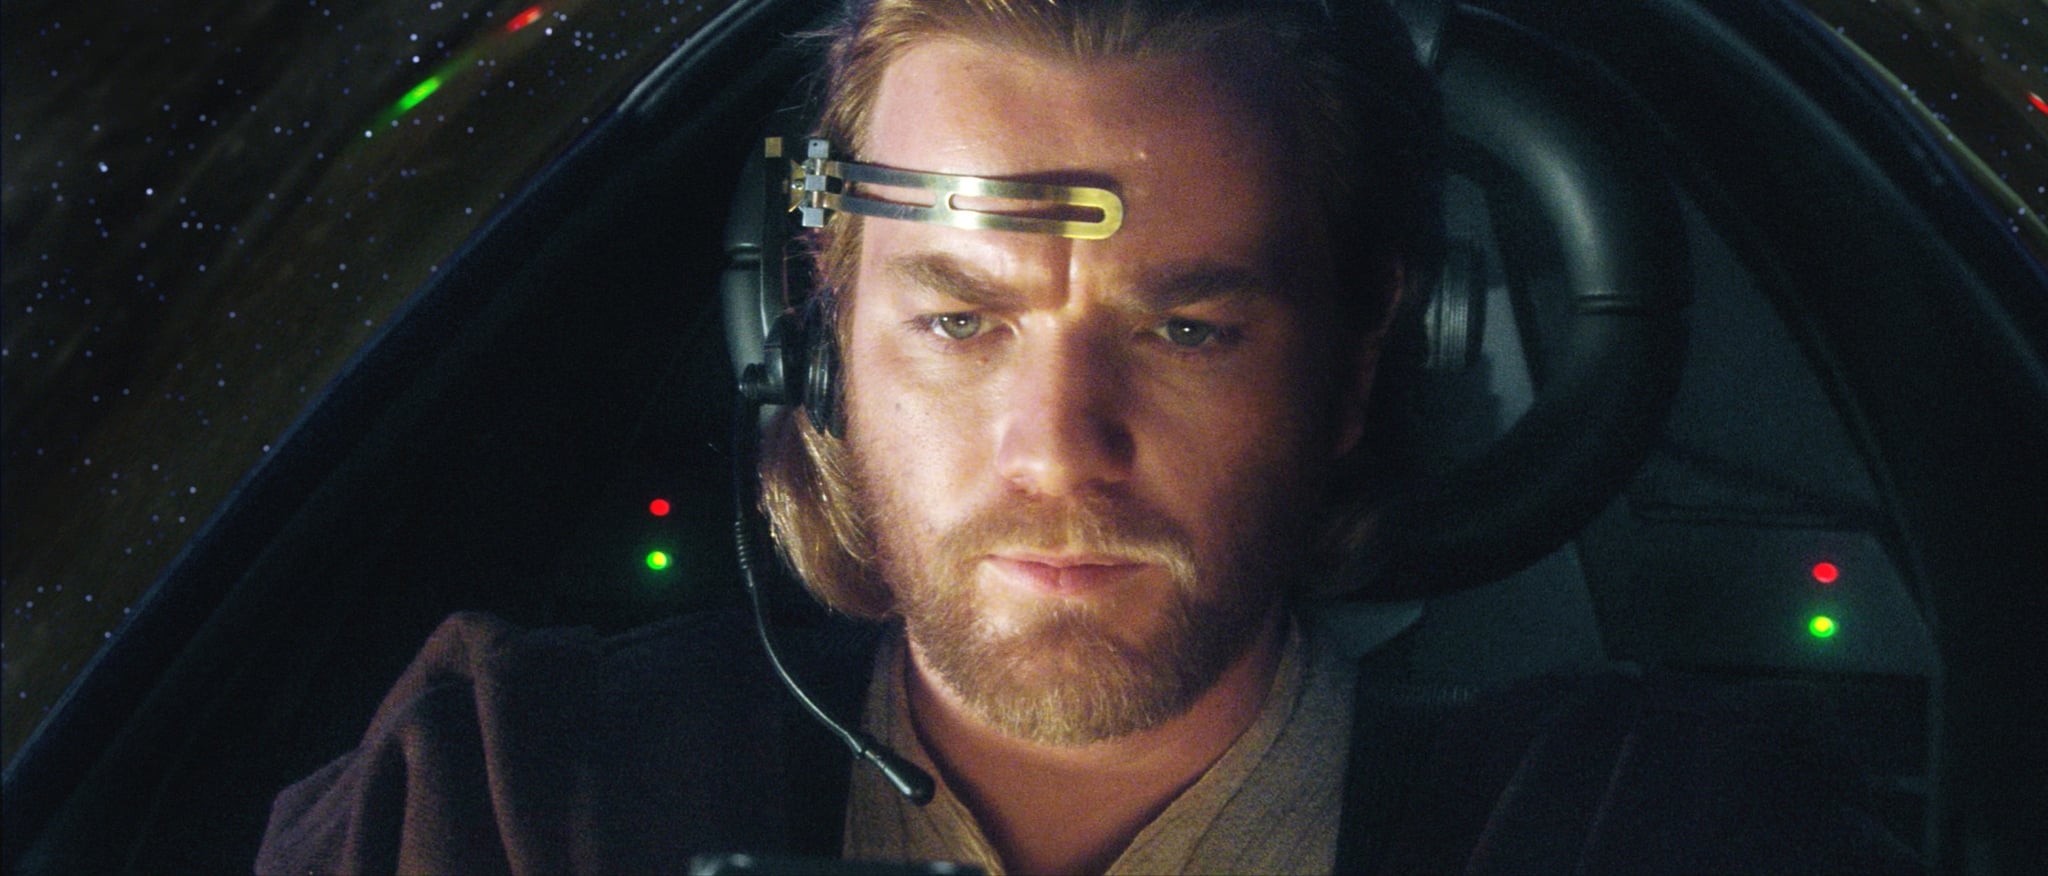 Ewan McGregor as Obi-Wan Kenobi in Star Wars: Attack of the Clones